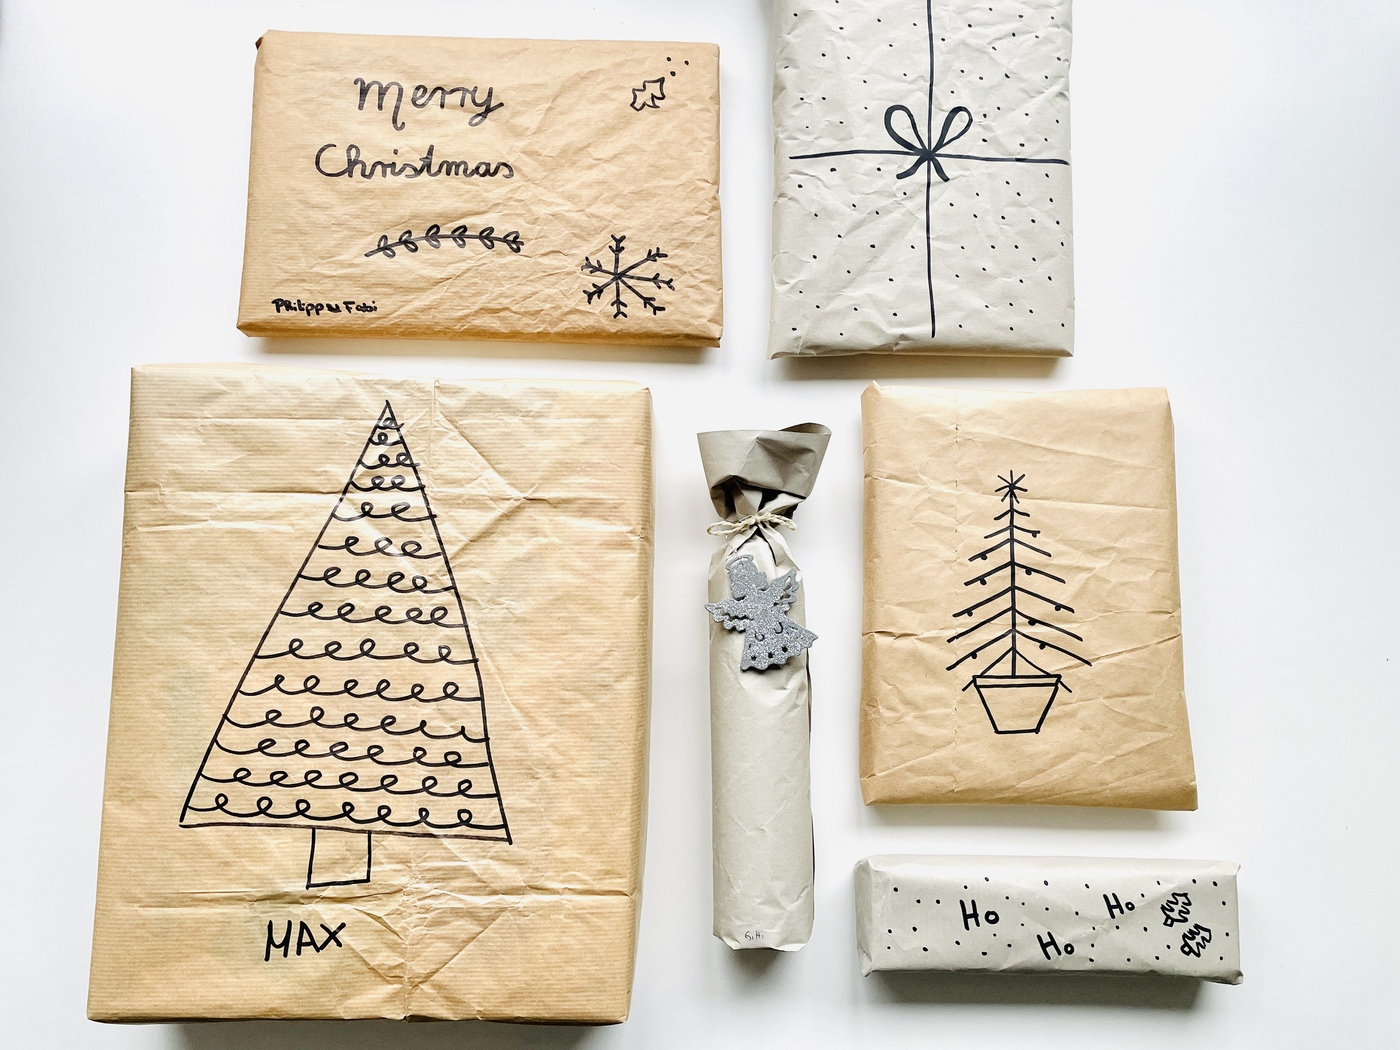 Weihnachtsgeschenke nachhaltig verpacken 1 - Weihnachtsgeschenke nachhaltig verpacken